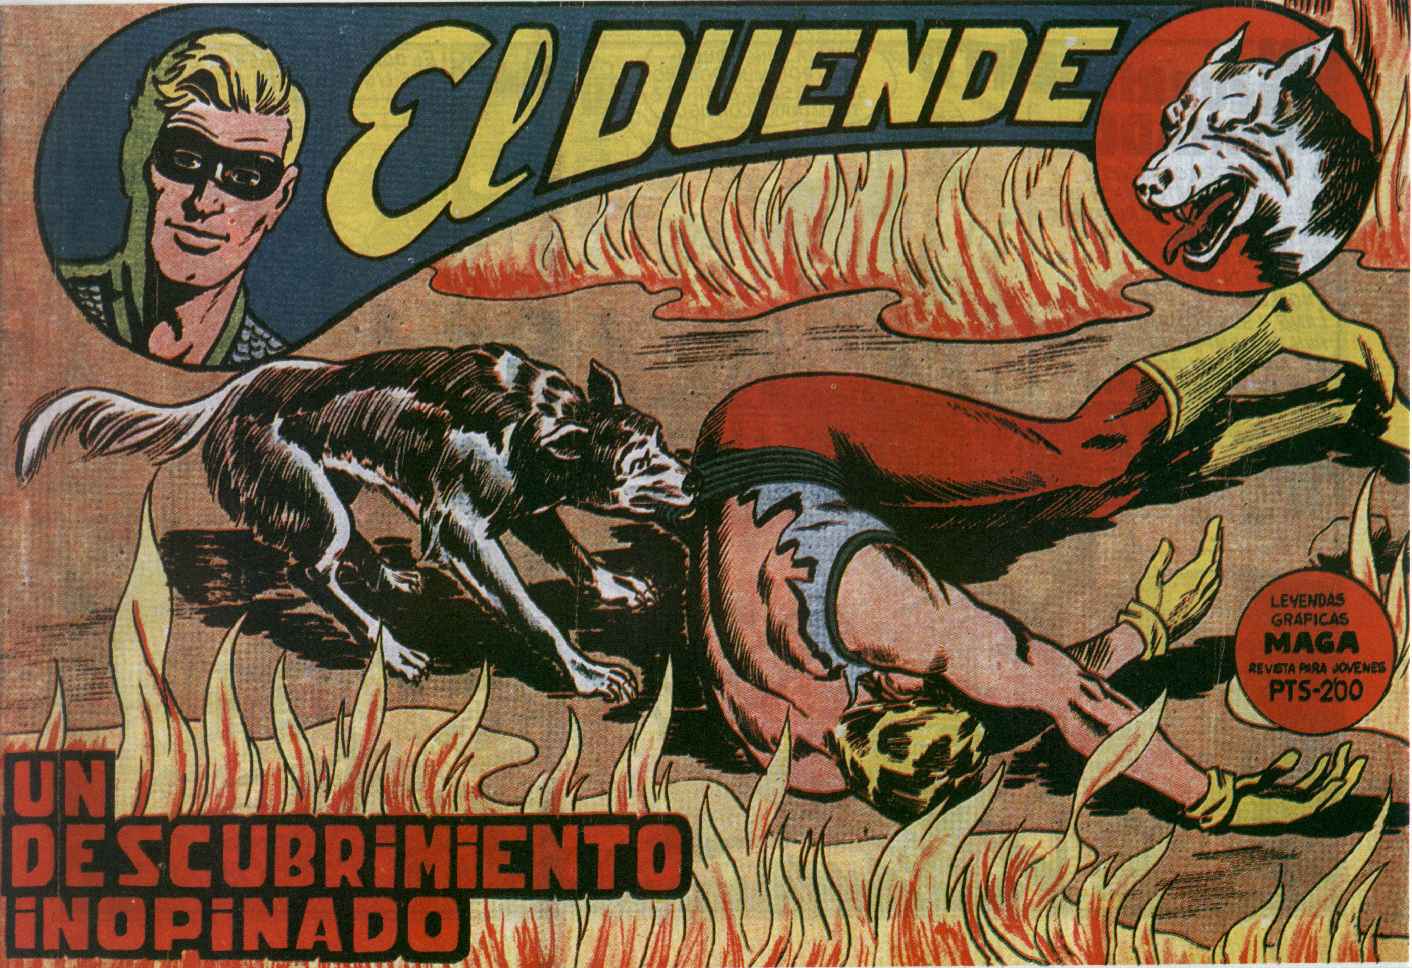 Comic Book Cover For El Duende 22 - Un descubrimiento inopinado